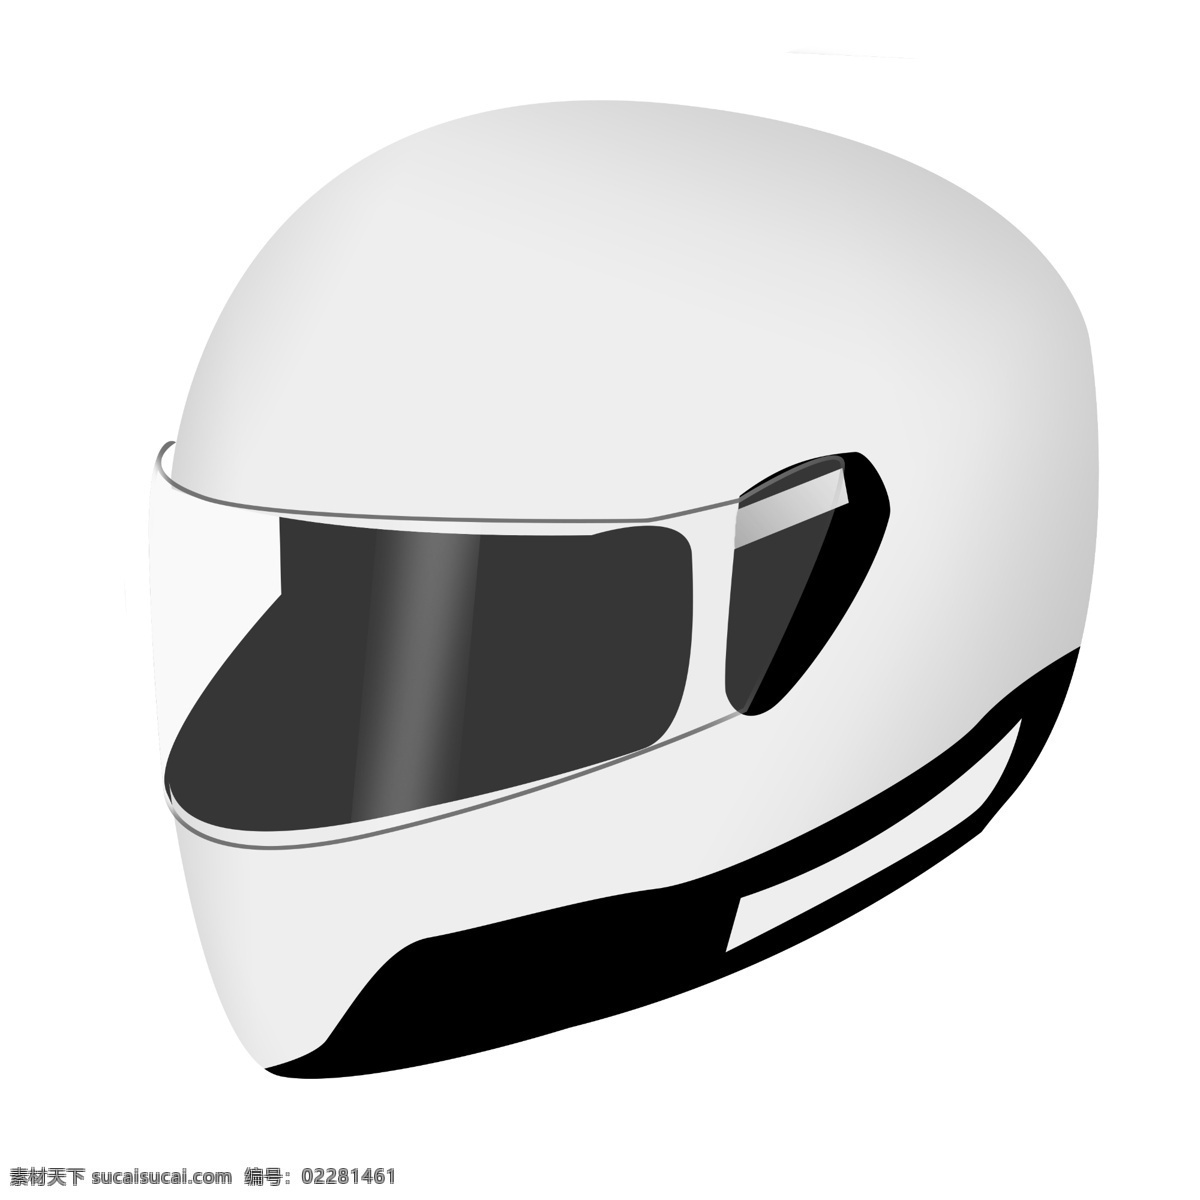 白色 头盔 装饰 插画 白色的头盔 漂亮的头盔 创意头盔 立体头盔 骑车头盔 头盔装饰 头盔插画